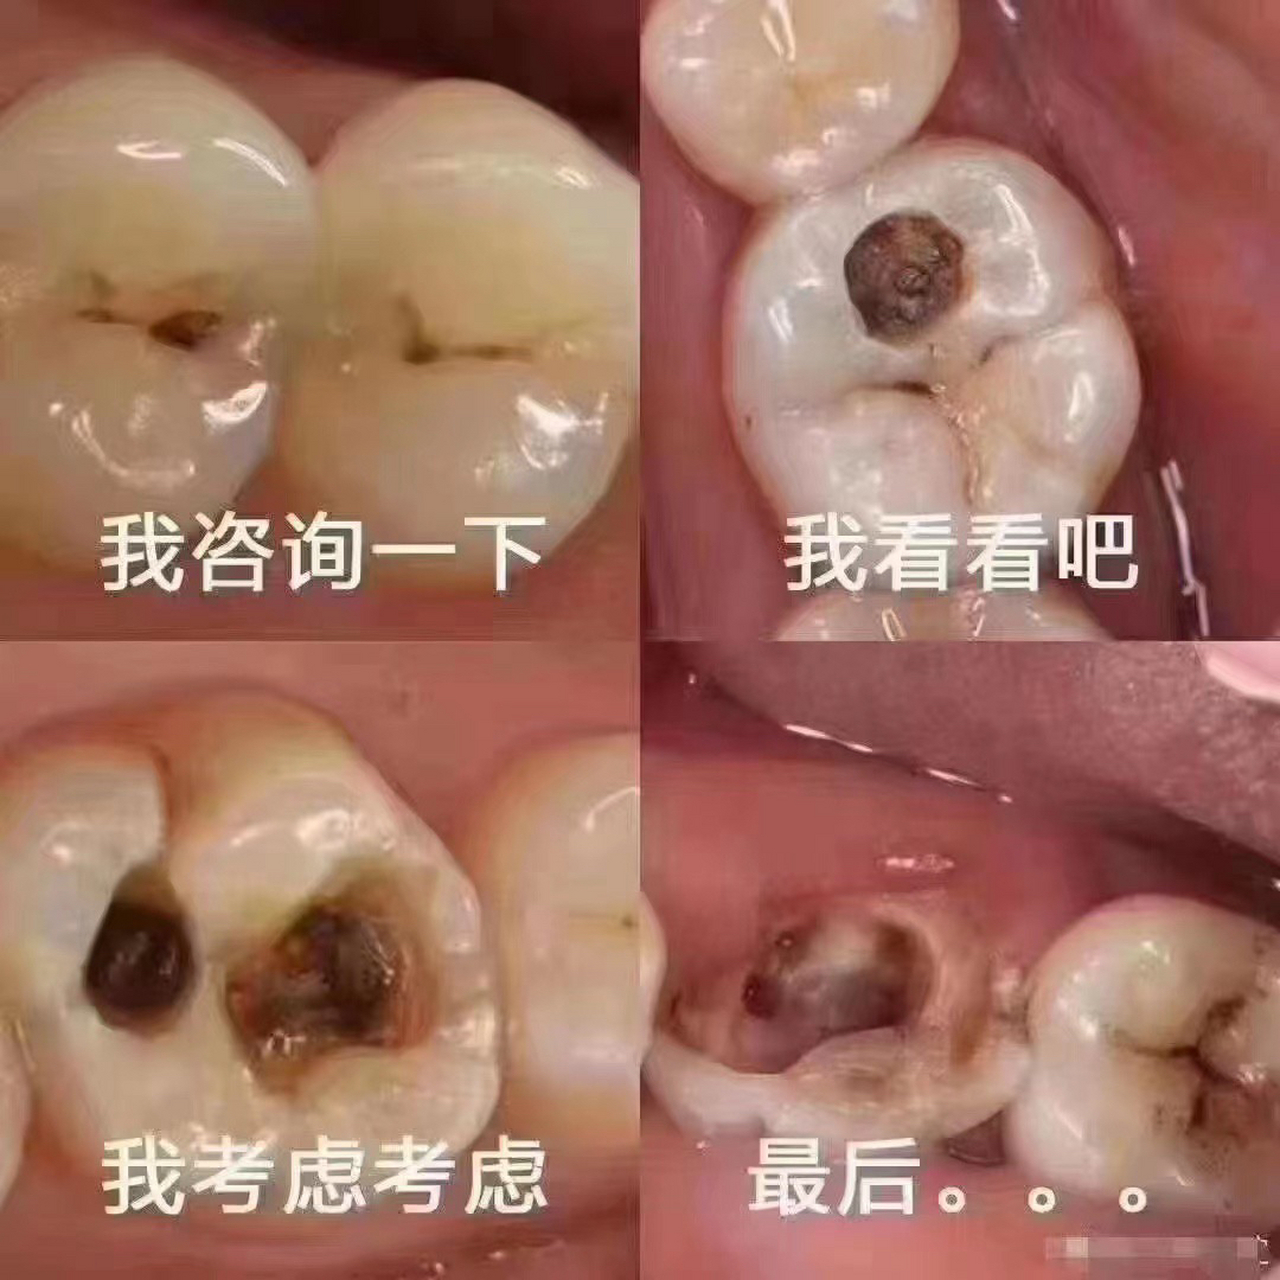 导致牙齿表面出现凹洞和裂缝,如果不及时治疗,可能会引起严重的并发症